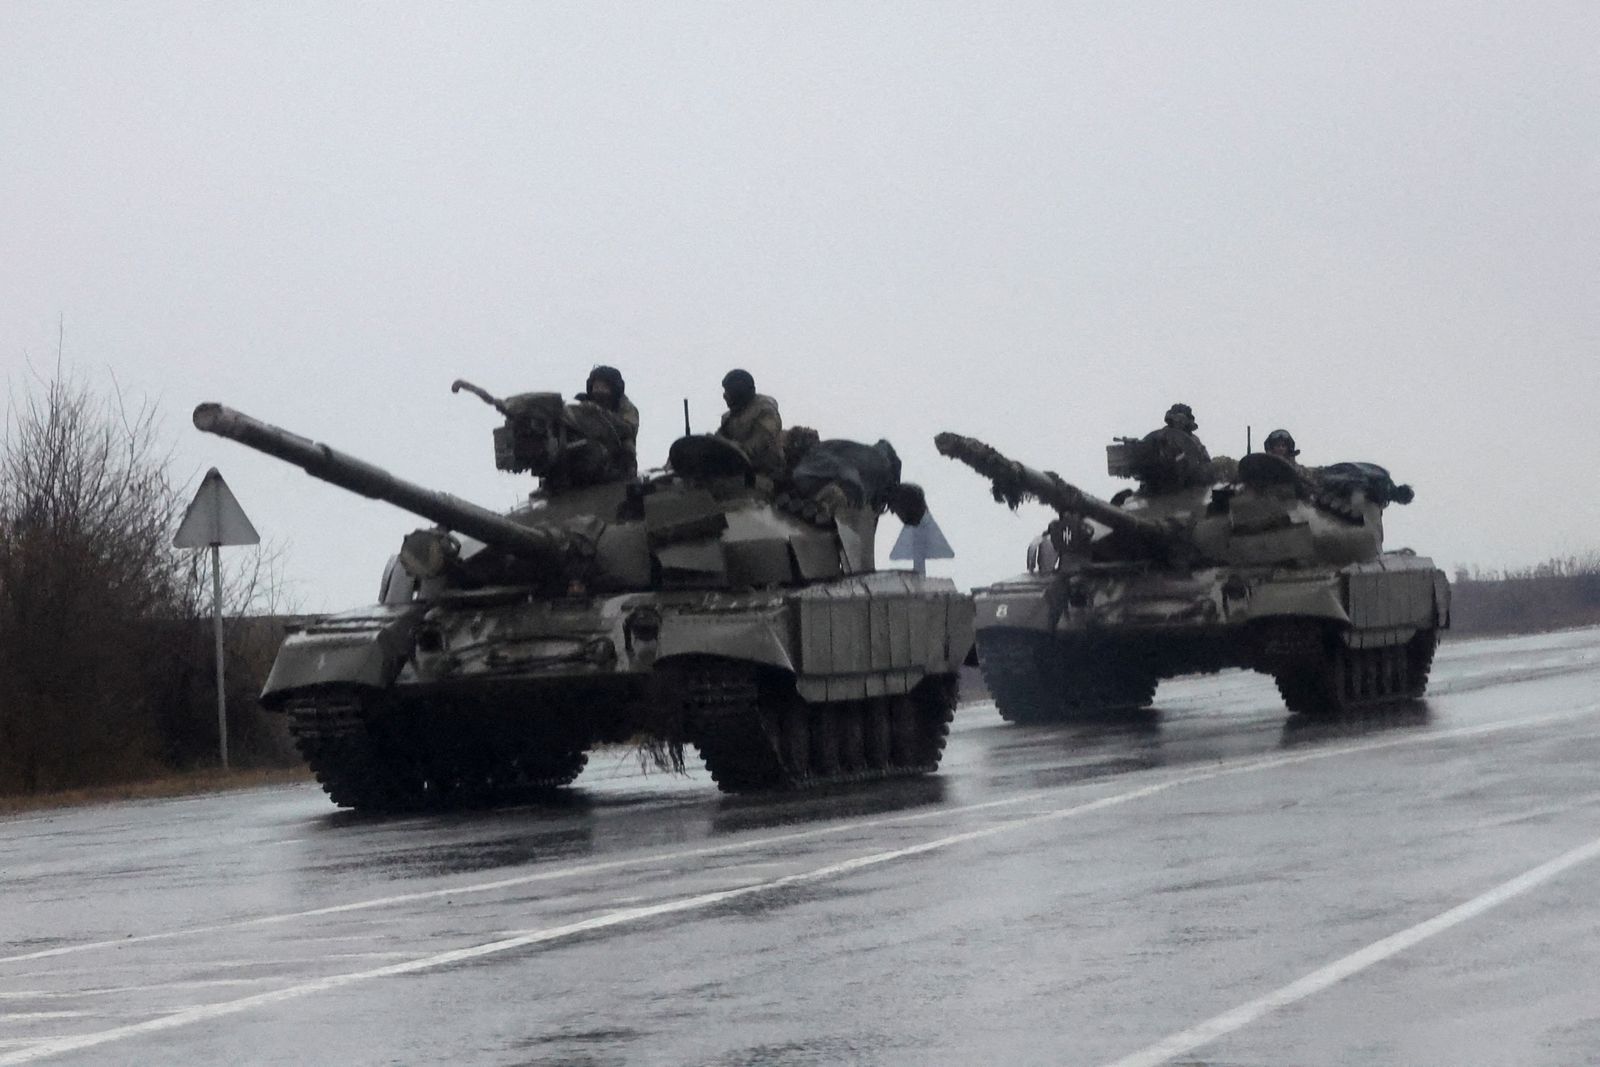 الدبابات الأوكرانية تتحرك باتجاه ماريوبل جنوبي البلاد، بعد بدء الغزو الروسي في شرق أوكرانيا، 24 فبراير 2022 - REUTERS